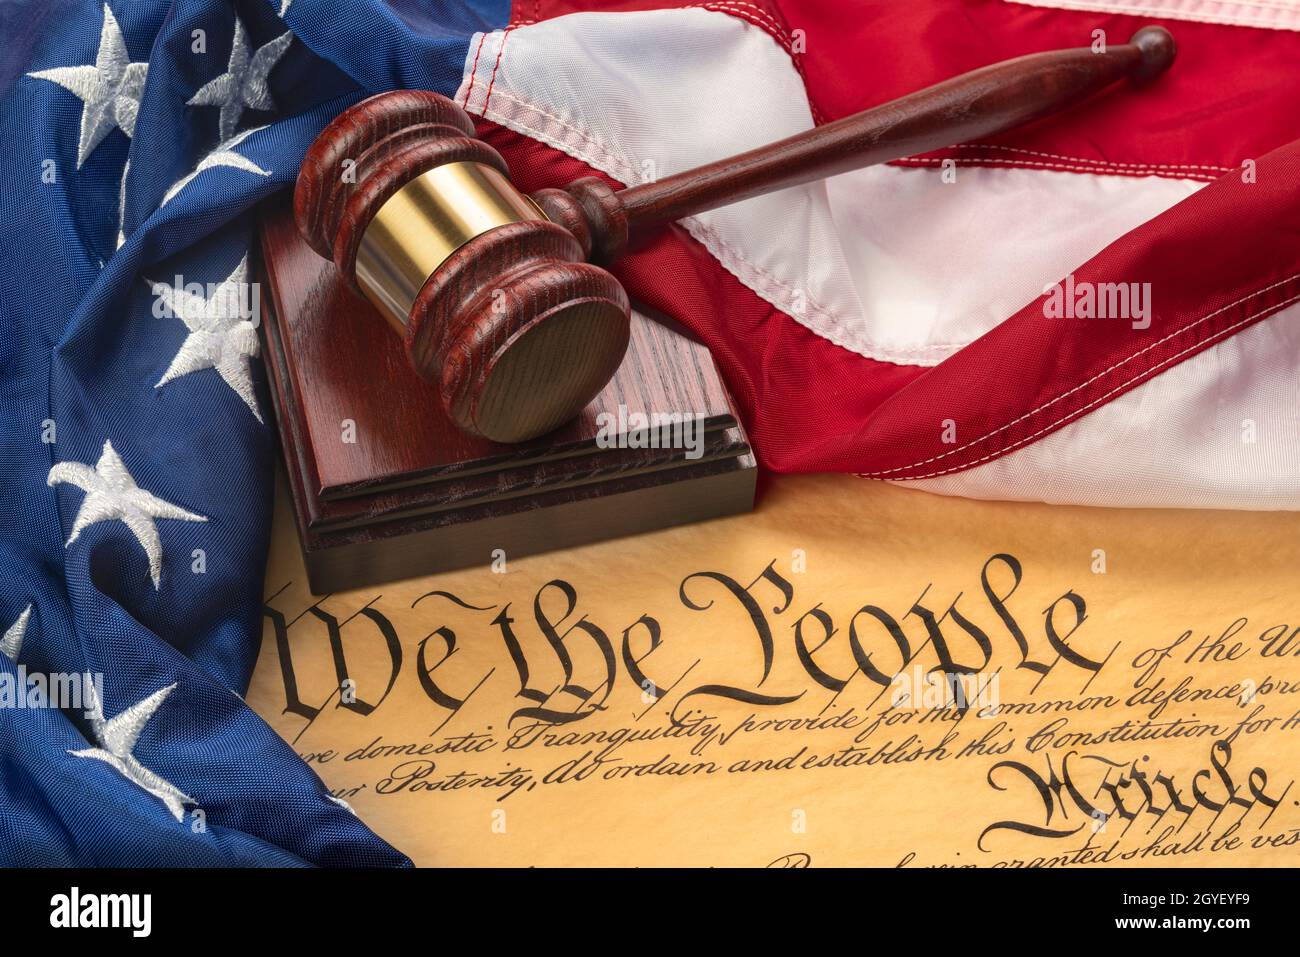 Die amerikanische Flagge umhüllte den Gavel-Block eines Richters und die Verfassung der Vereinigten Staaten, um sie als Symbol für Gesetze, Freiheit und Trennung der Regierung zu verwenden Stockfoto